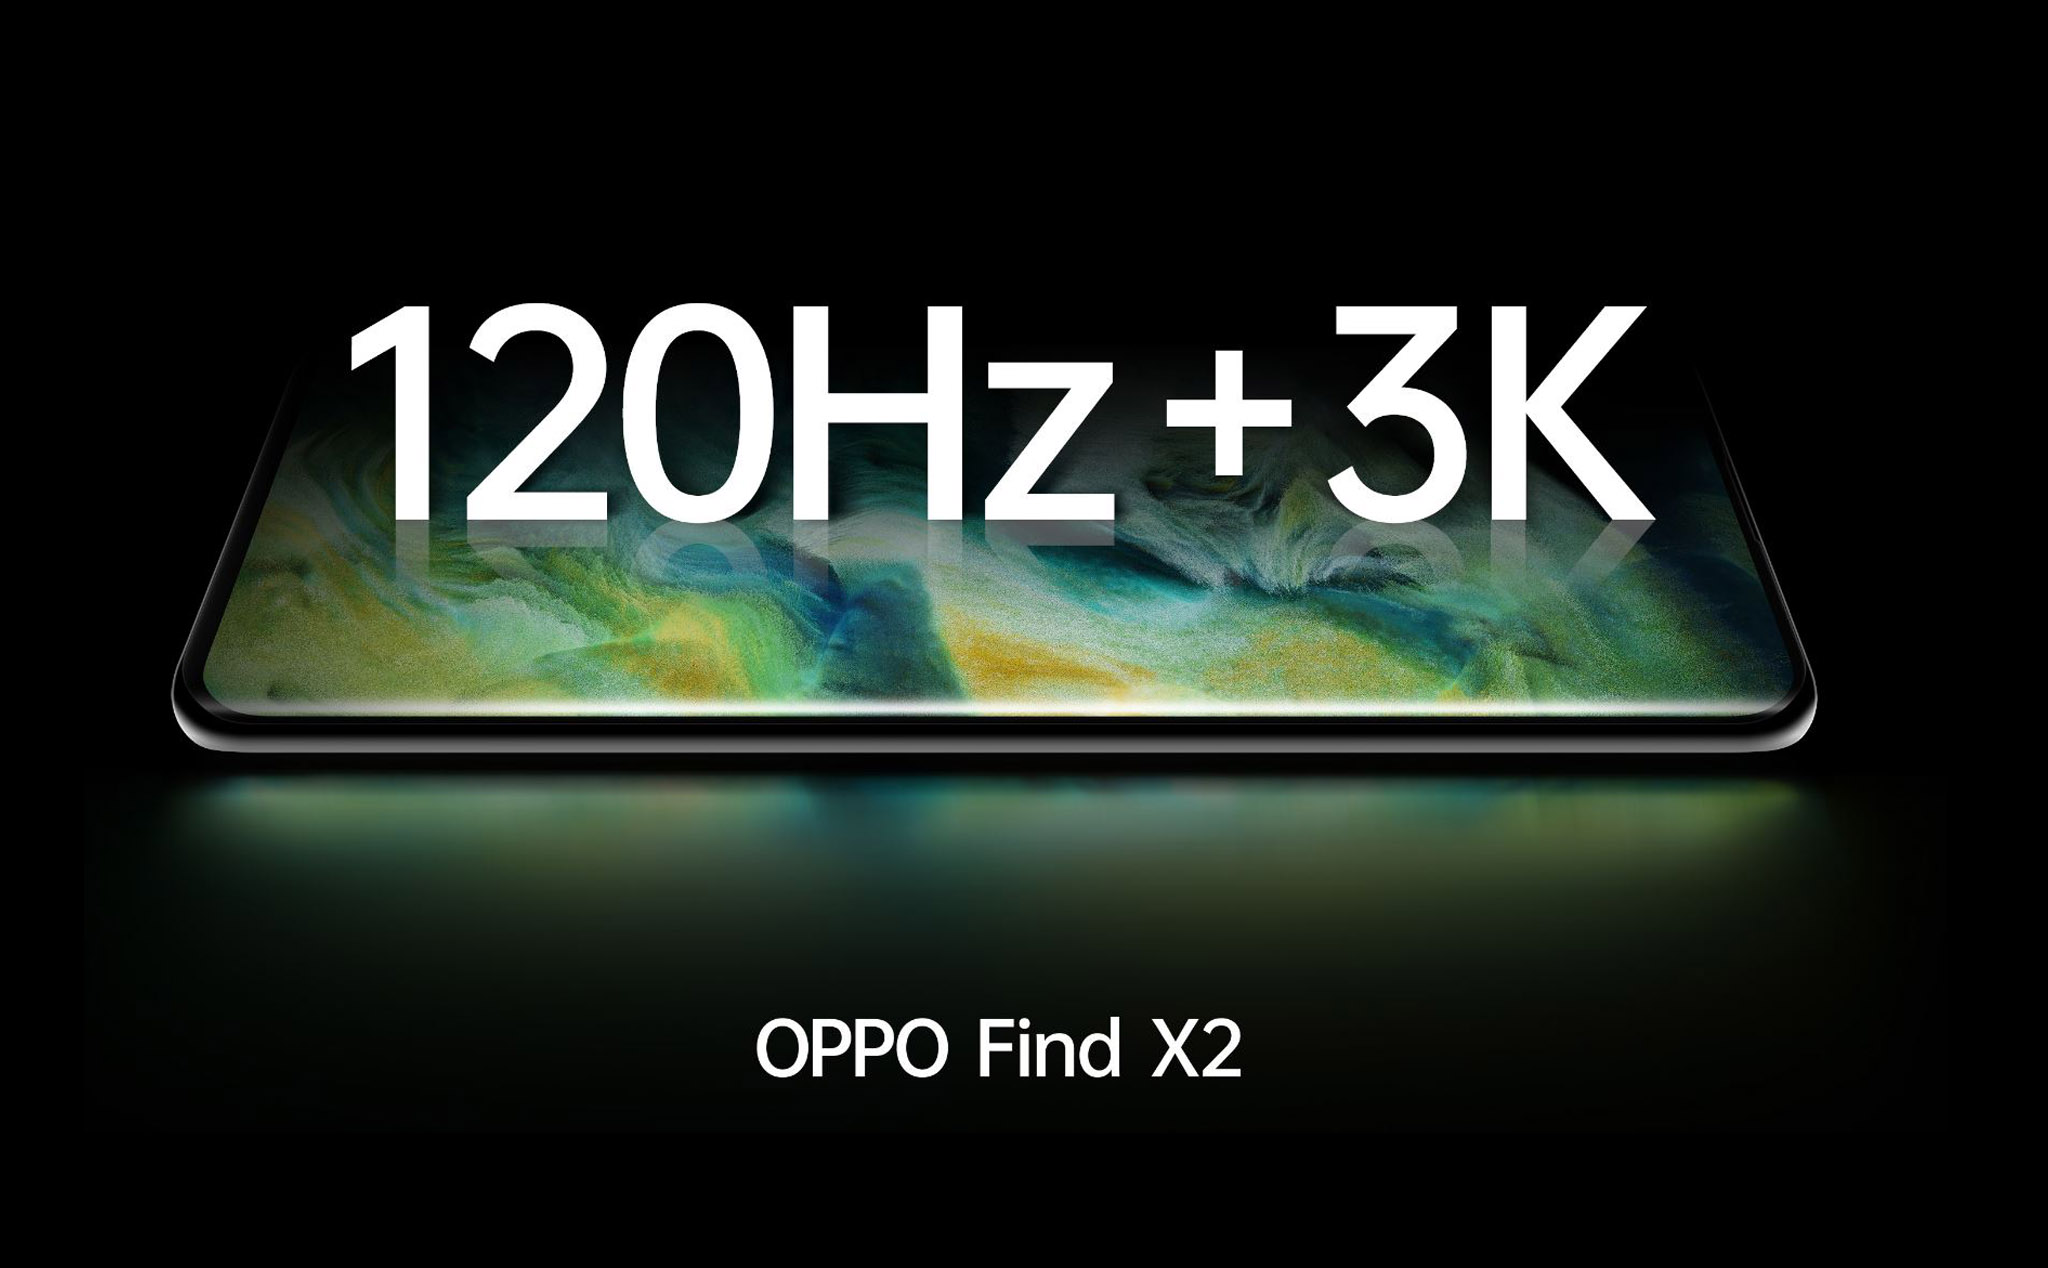 Oppo Find X2 sẽ được giới thiệu ngày 6/3, trang bị màn hình 3K 120Hz